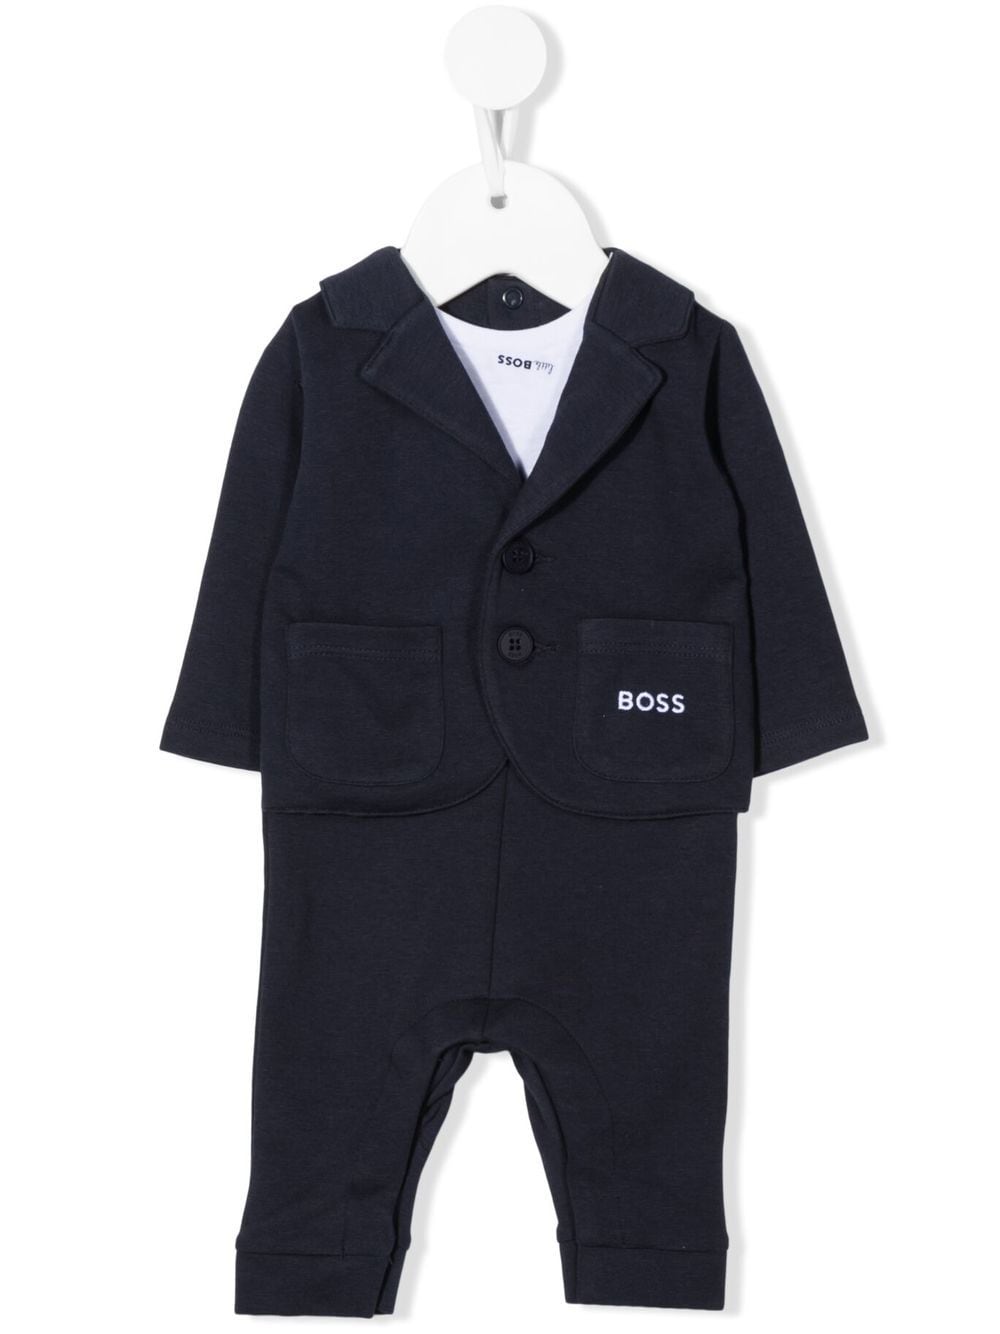 Bosswear Babies' 3-in-1 Milano Suit Set In Blue | ModeSens